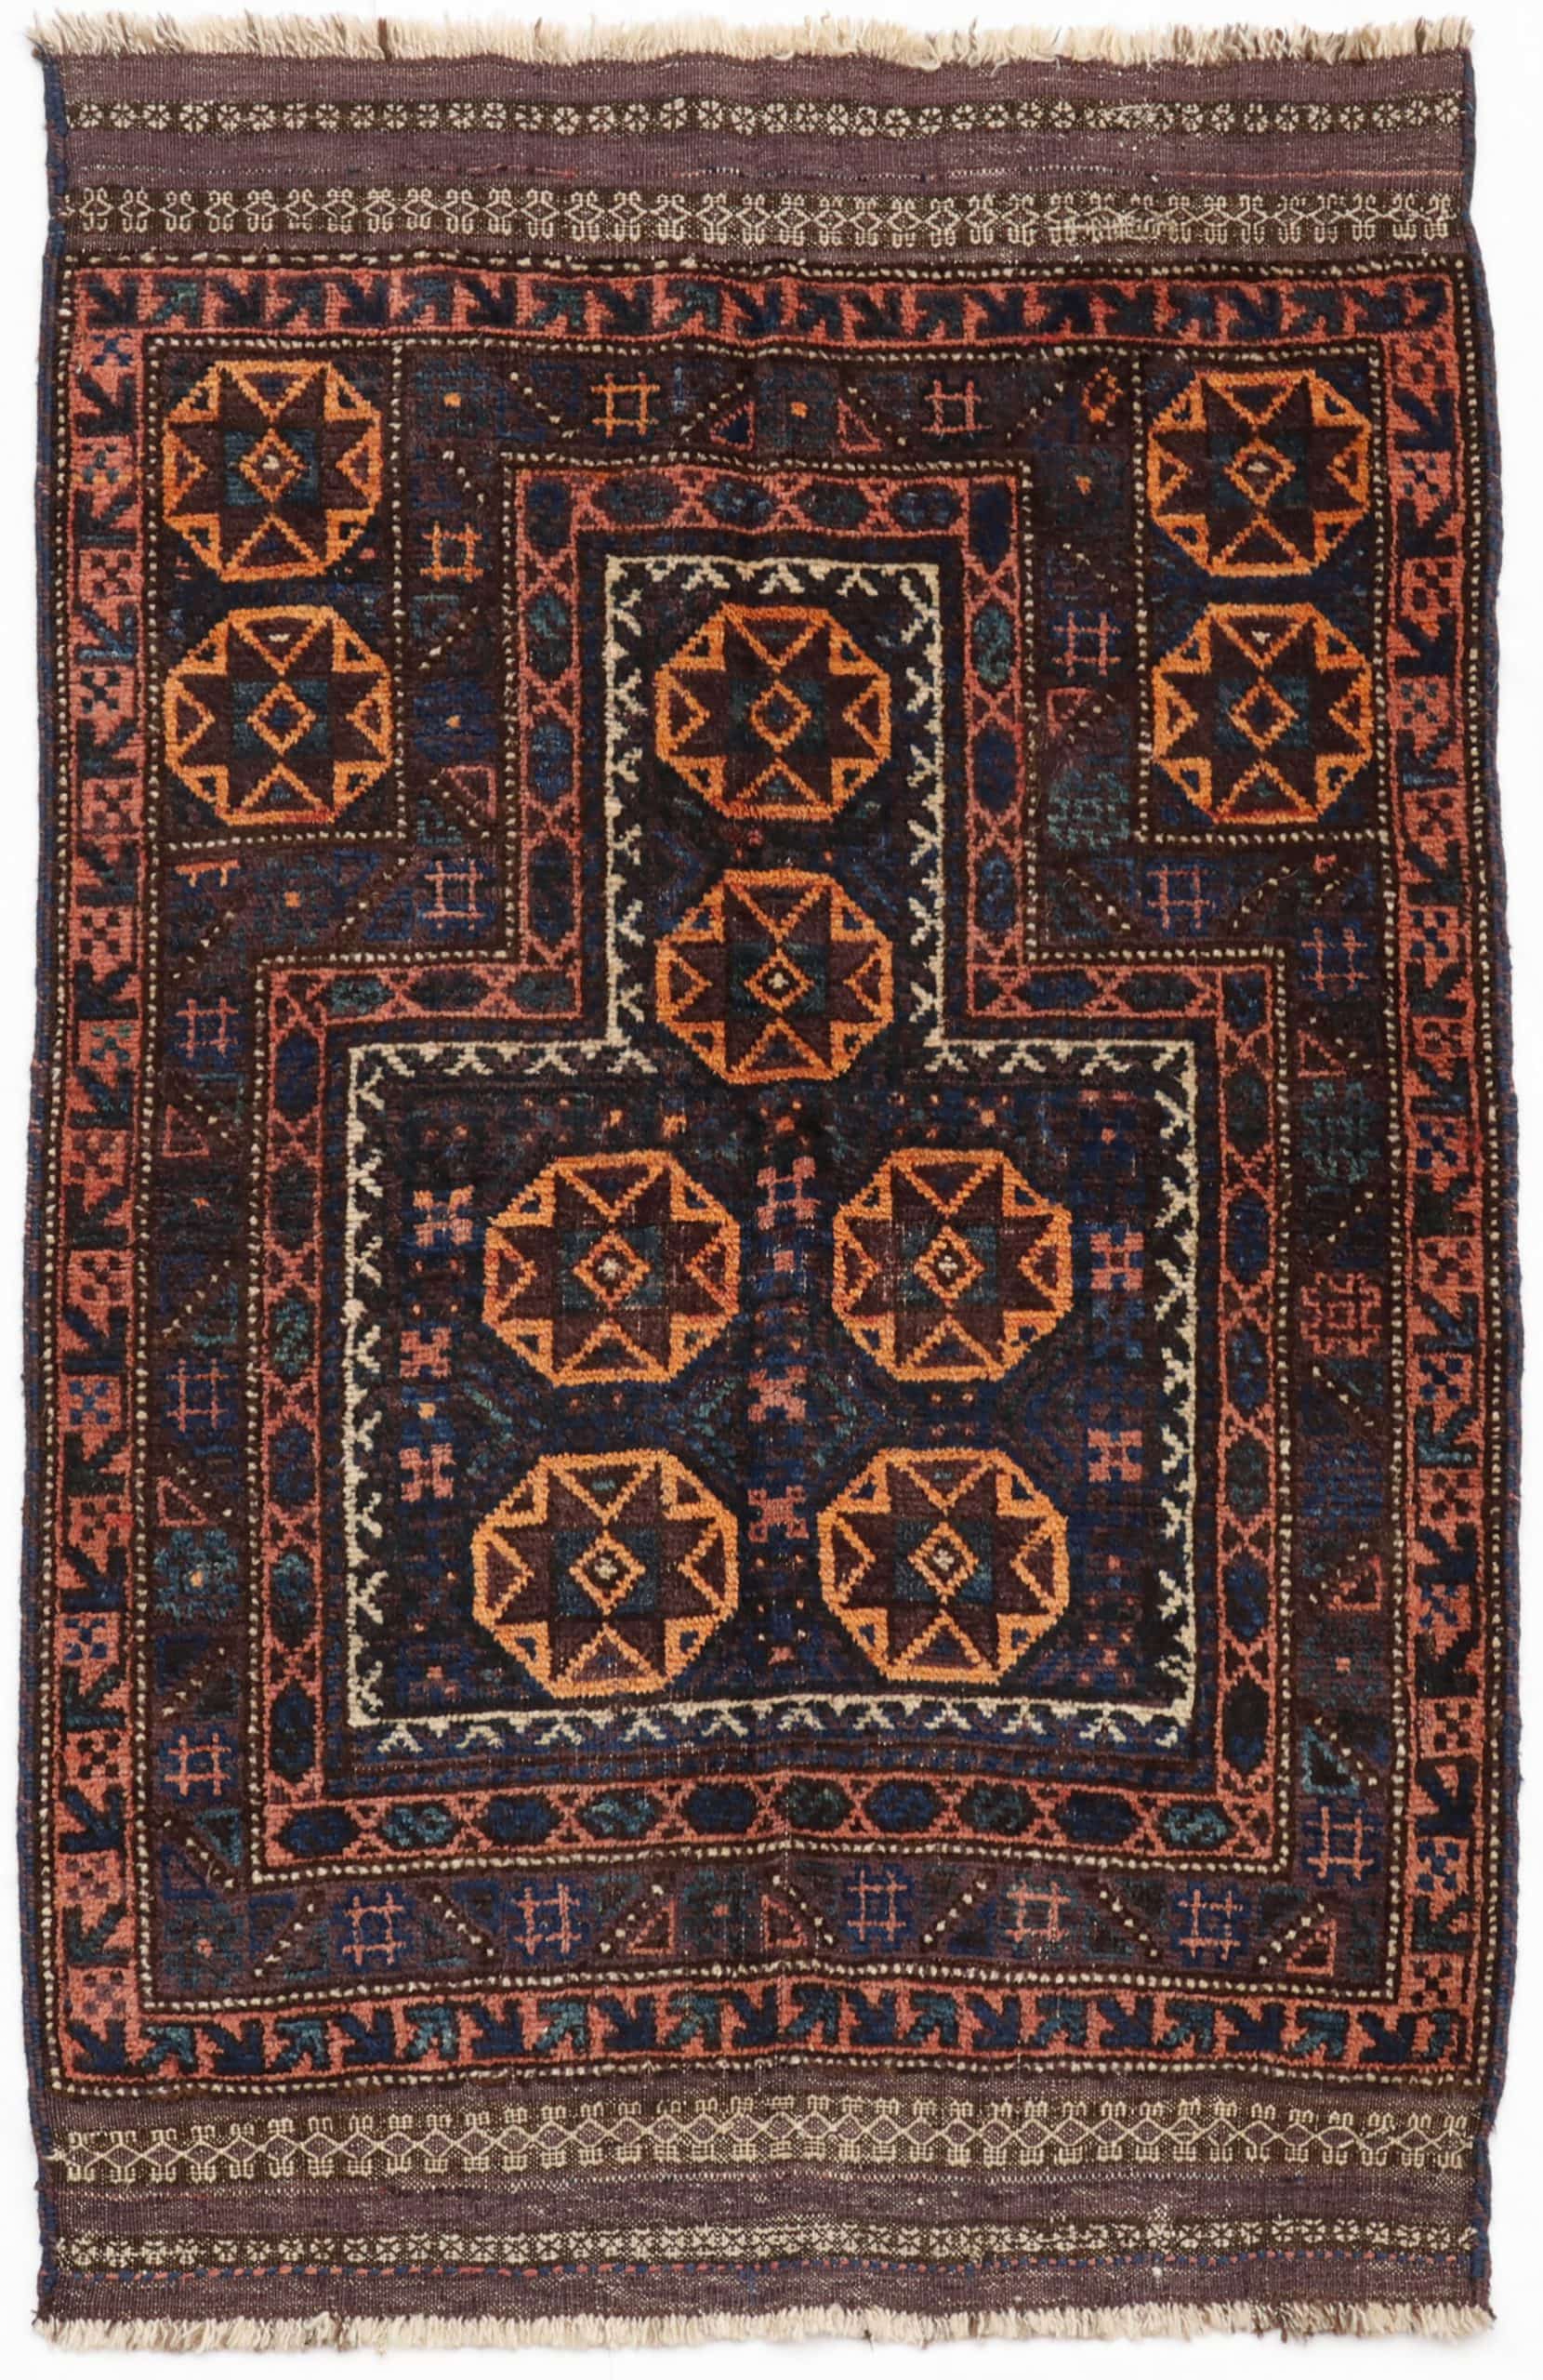 Antique Baluch rug from Afghanistan. 148x96 cms • Nómada